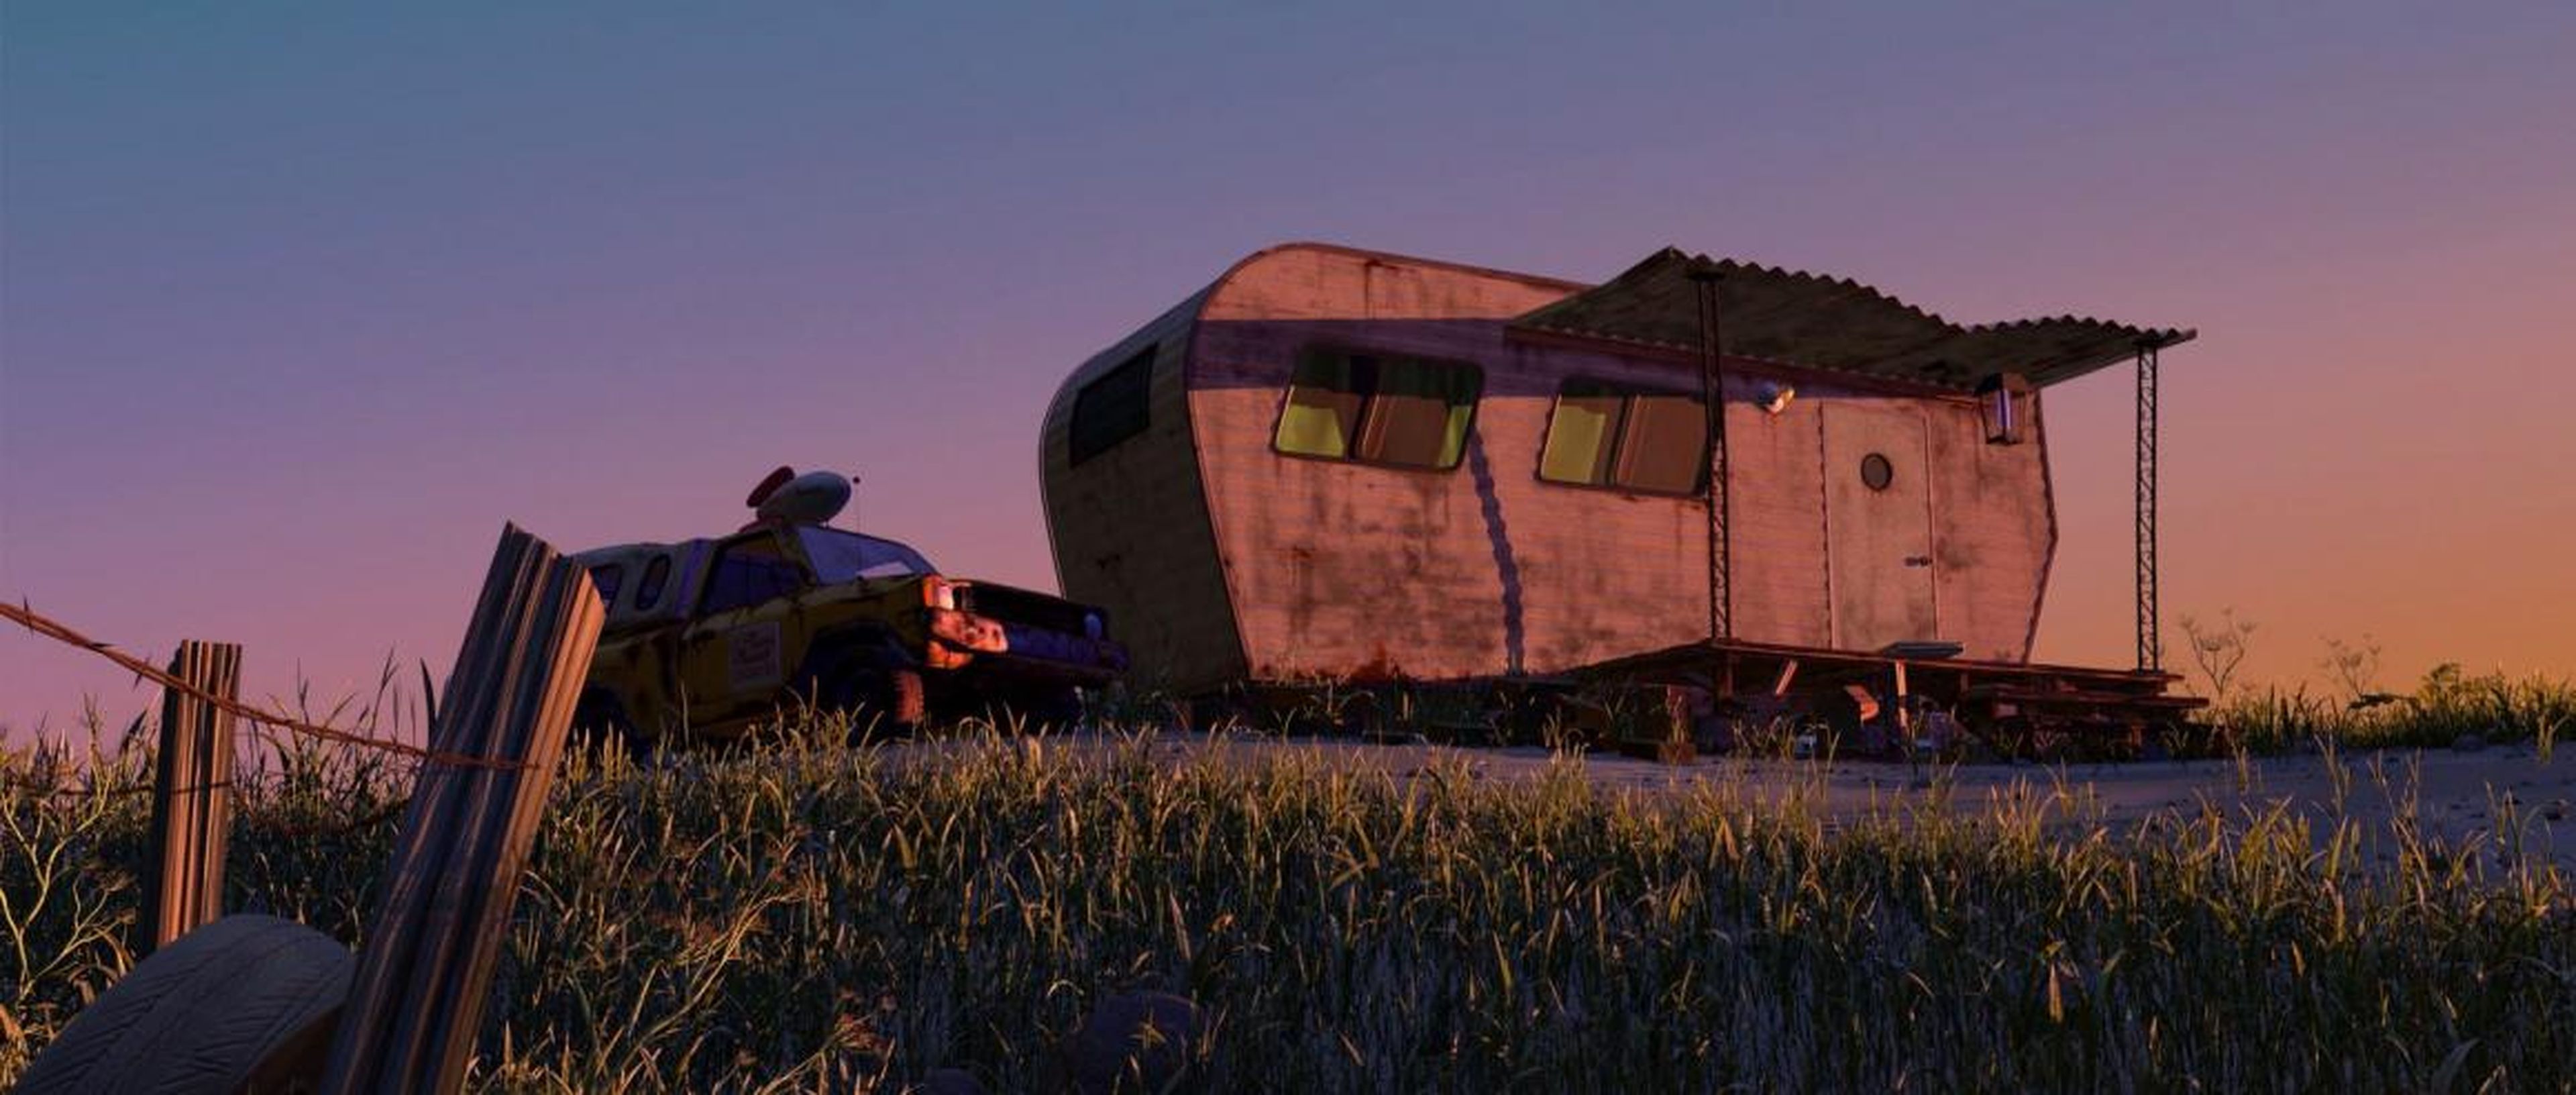 Este es uno de los camiones de Pizza Planet más fáciles de identificar en las películas de Pixar.